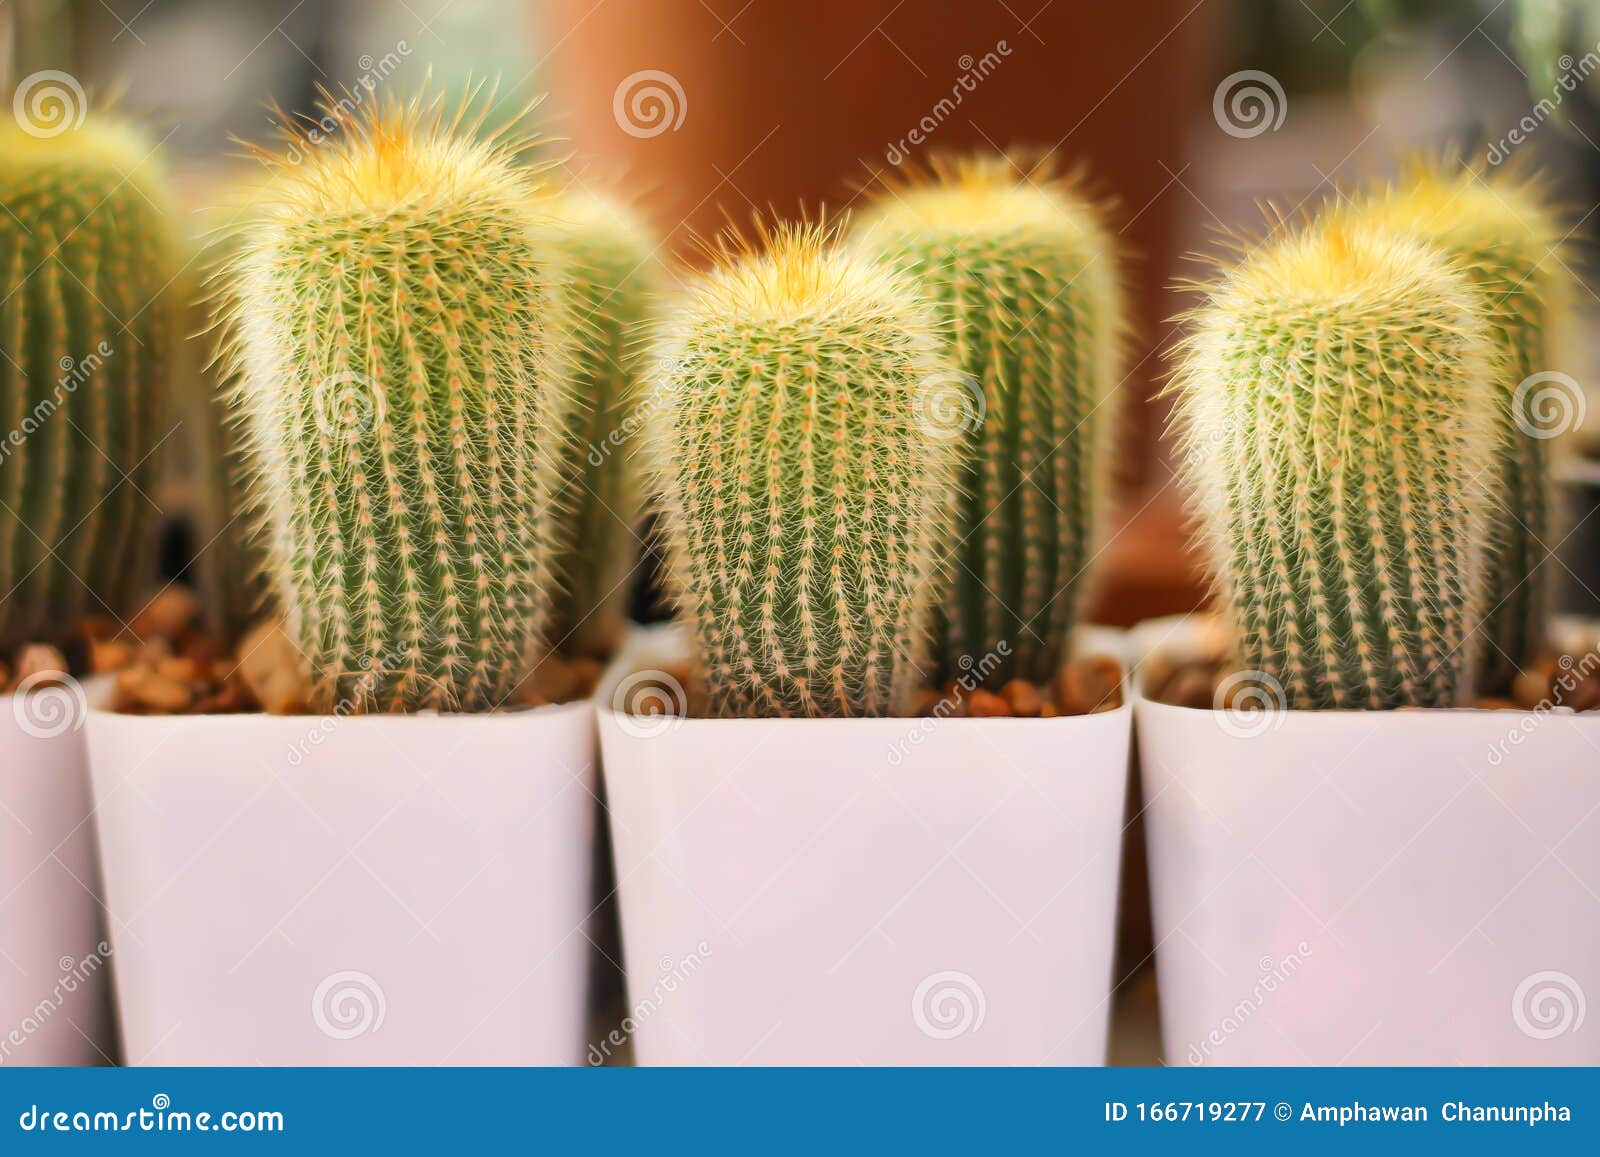 Cactus Cereus Peruvianus Group In Small White Pot At ...